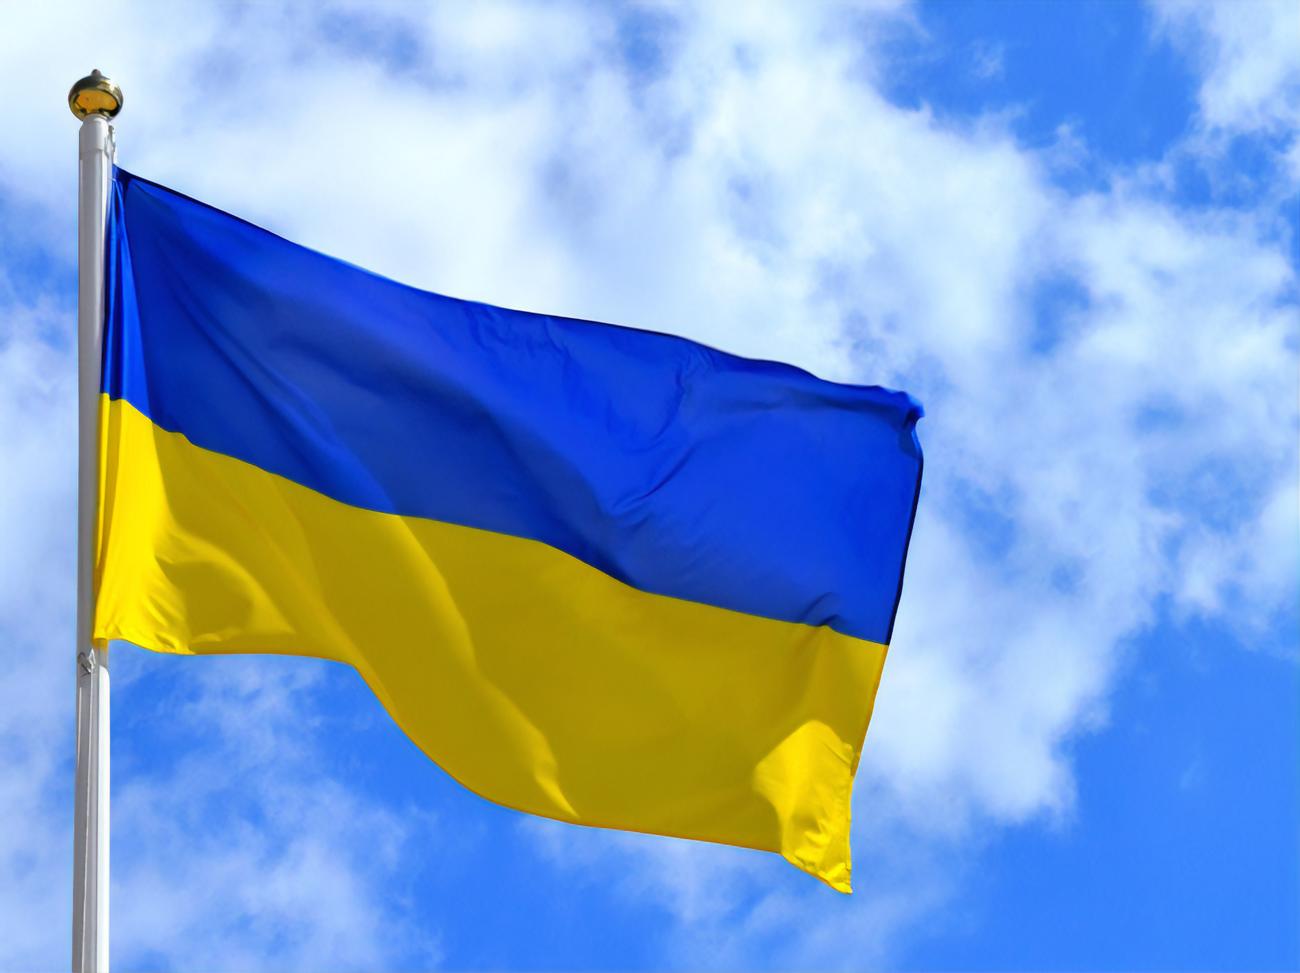 Украина вышла из Договора о согласованной монопольной политике между членами СНГ  